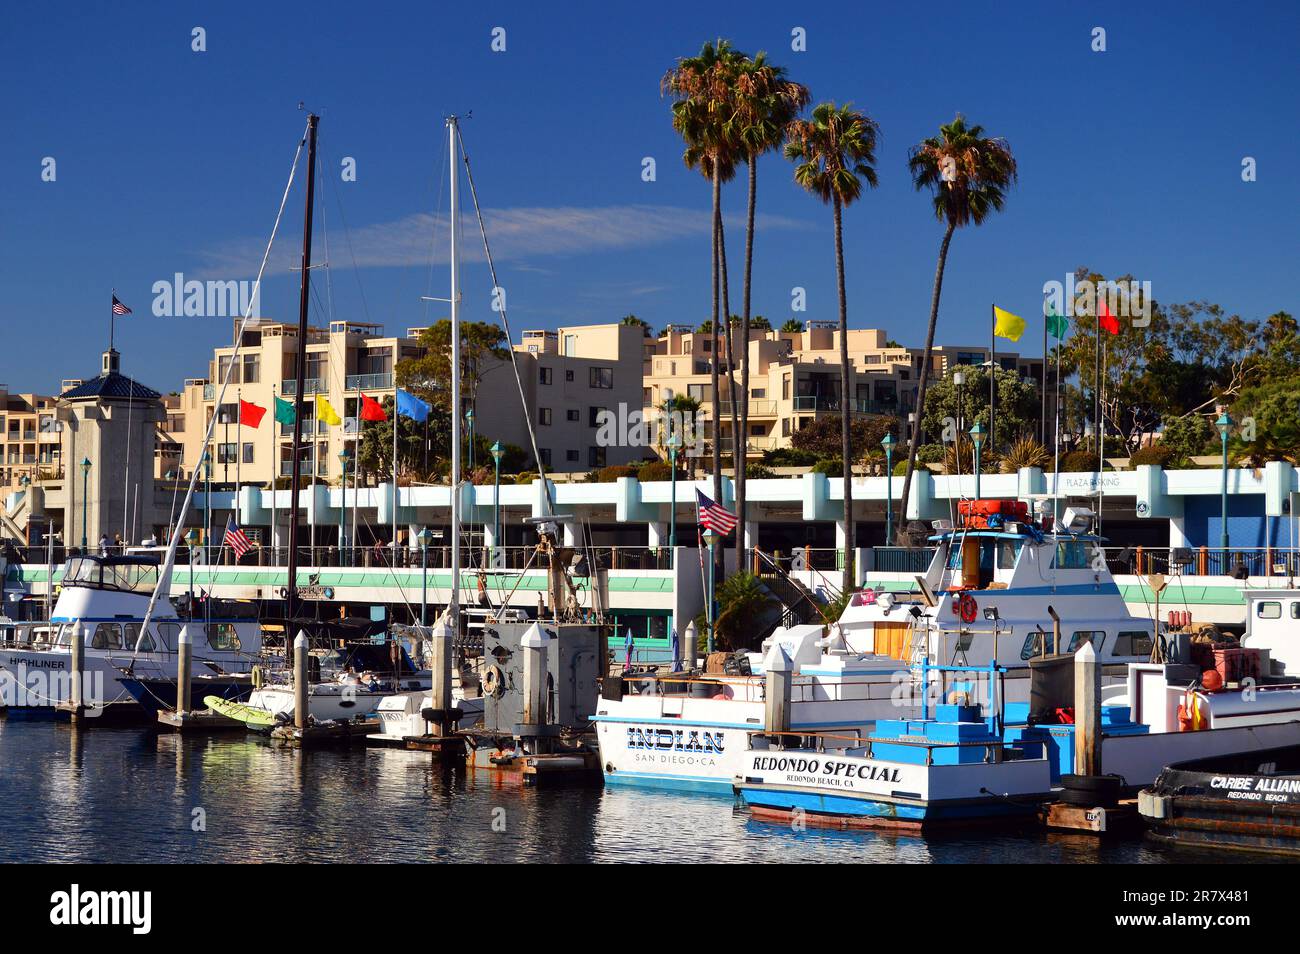 Segelboote, Schiffe und Boote bevölkern einen ruhigen Yachthafen in Redondo Beach, Kalifornien, in der Nähe von Los Angeles Stockfoto